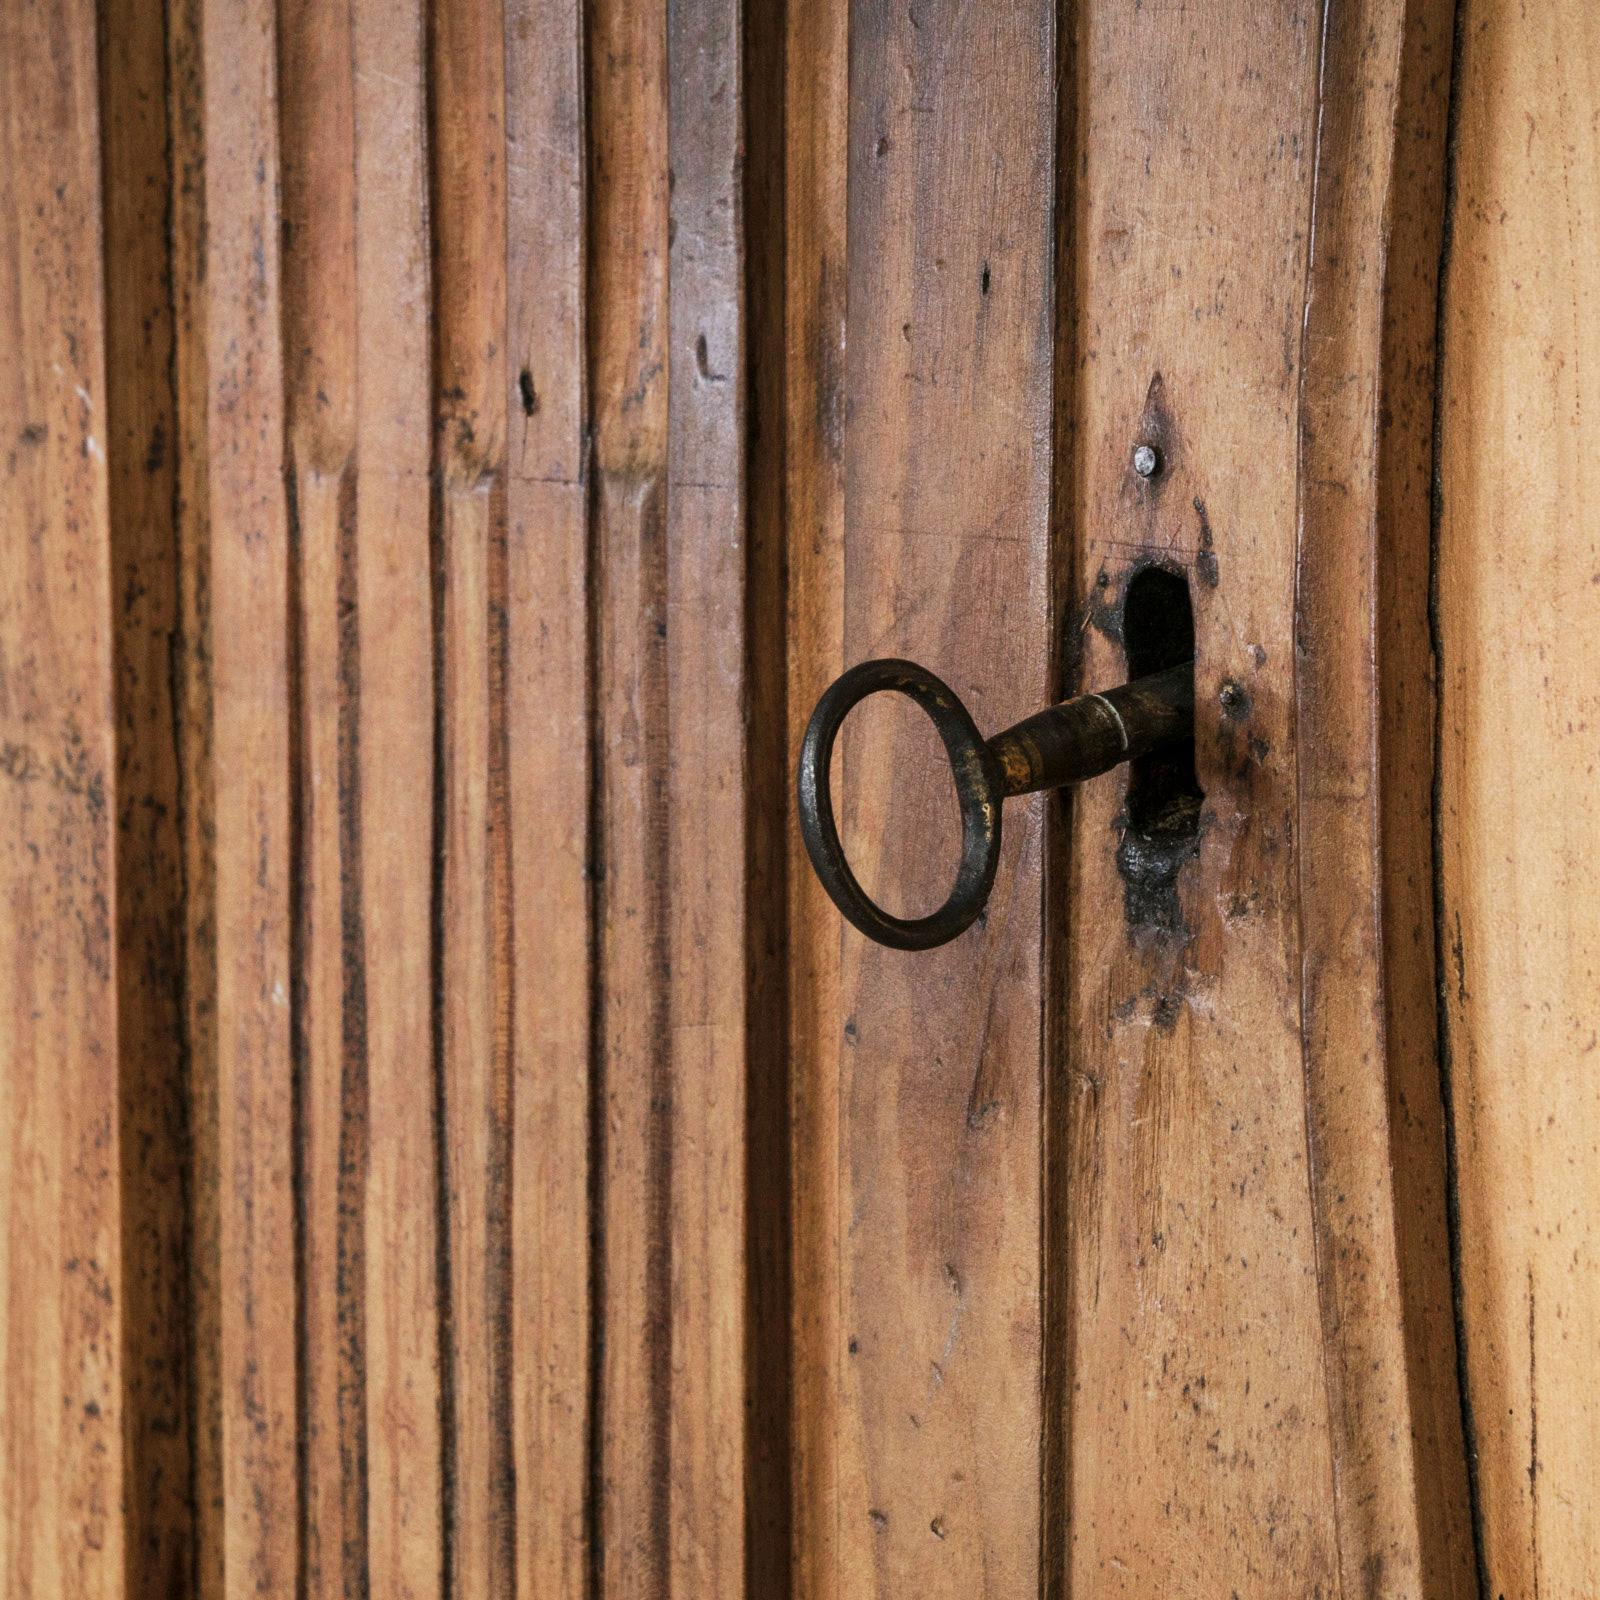 Très décorative armoire rustique en bois de fruitier (cerisier) sculptée à la main. Ca. 1800 - 1850.

Cette armoire a été poncée à la main pour renforcer l'impression de rusticité, révélant un motif de bois chaud de couleur miel. Les portes